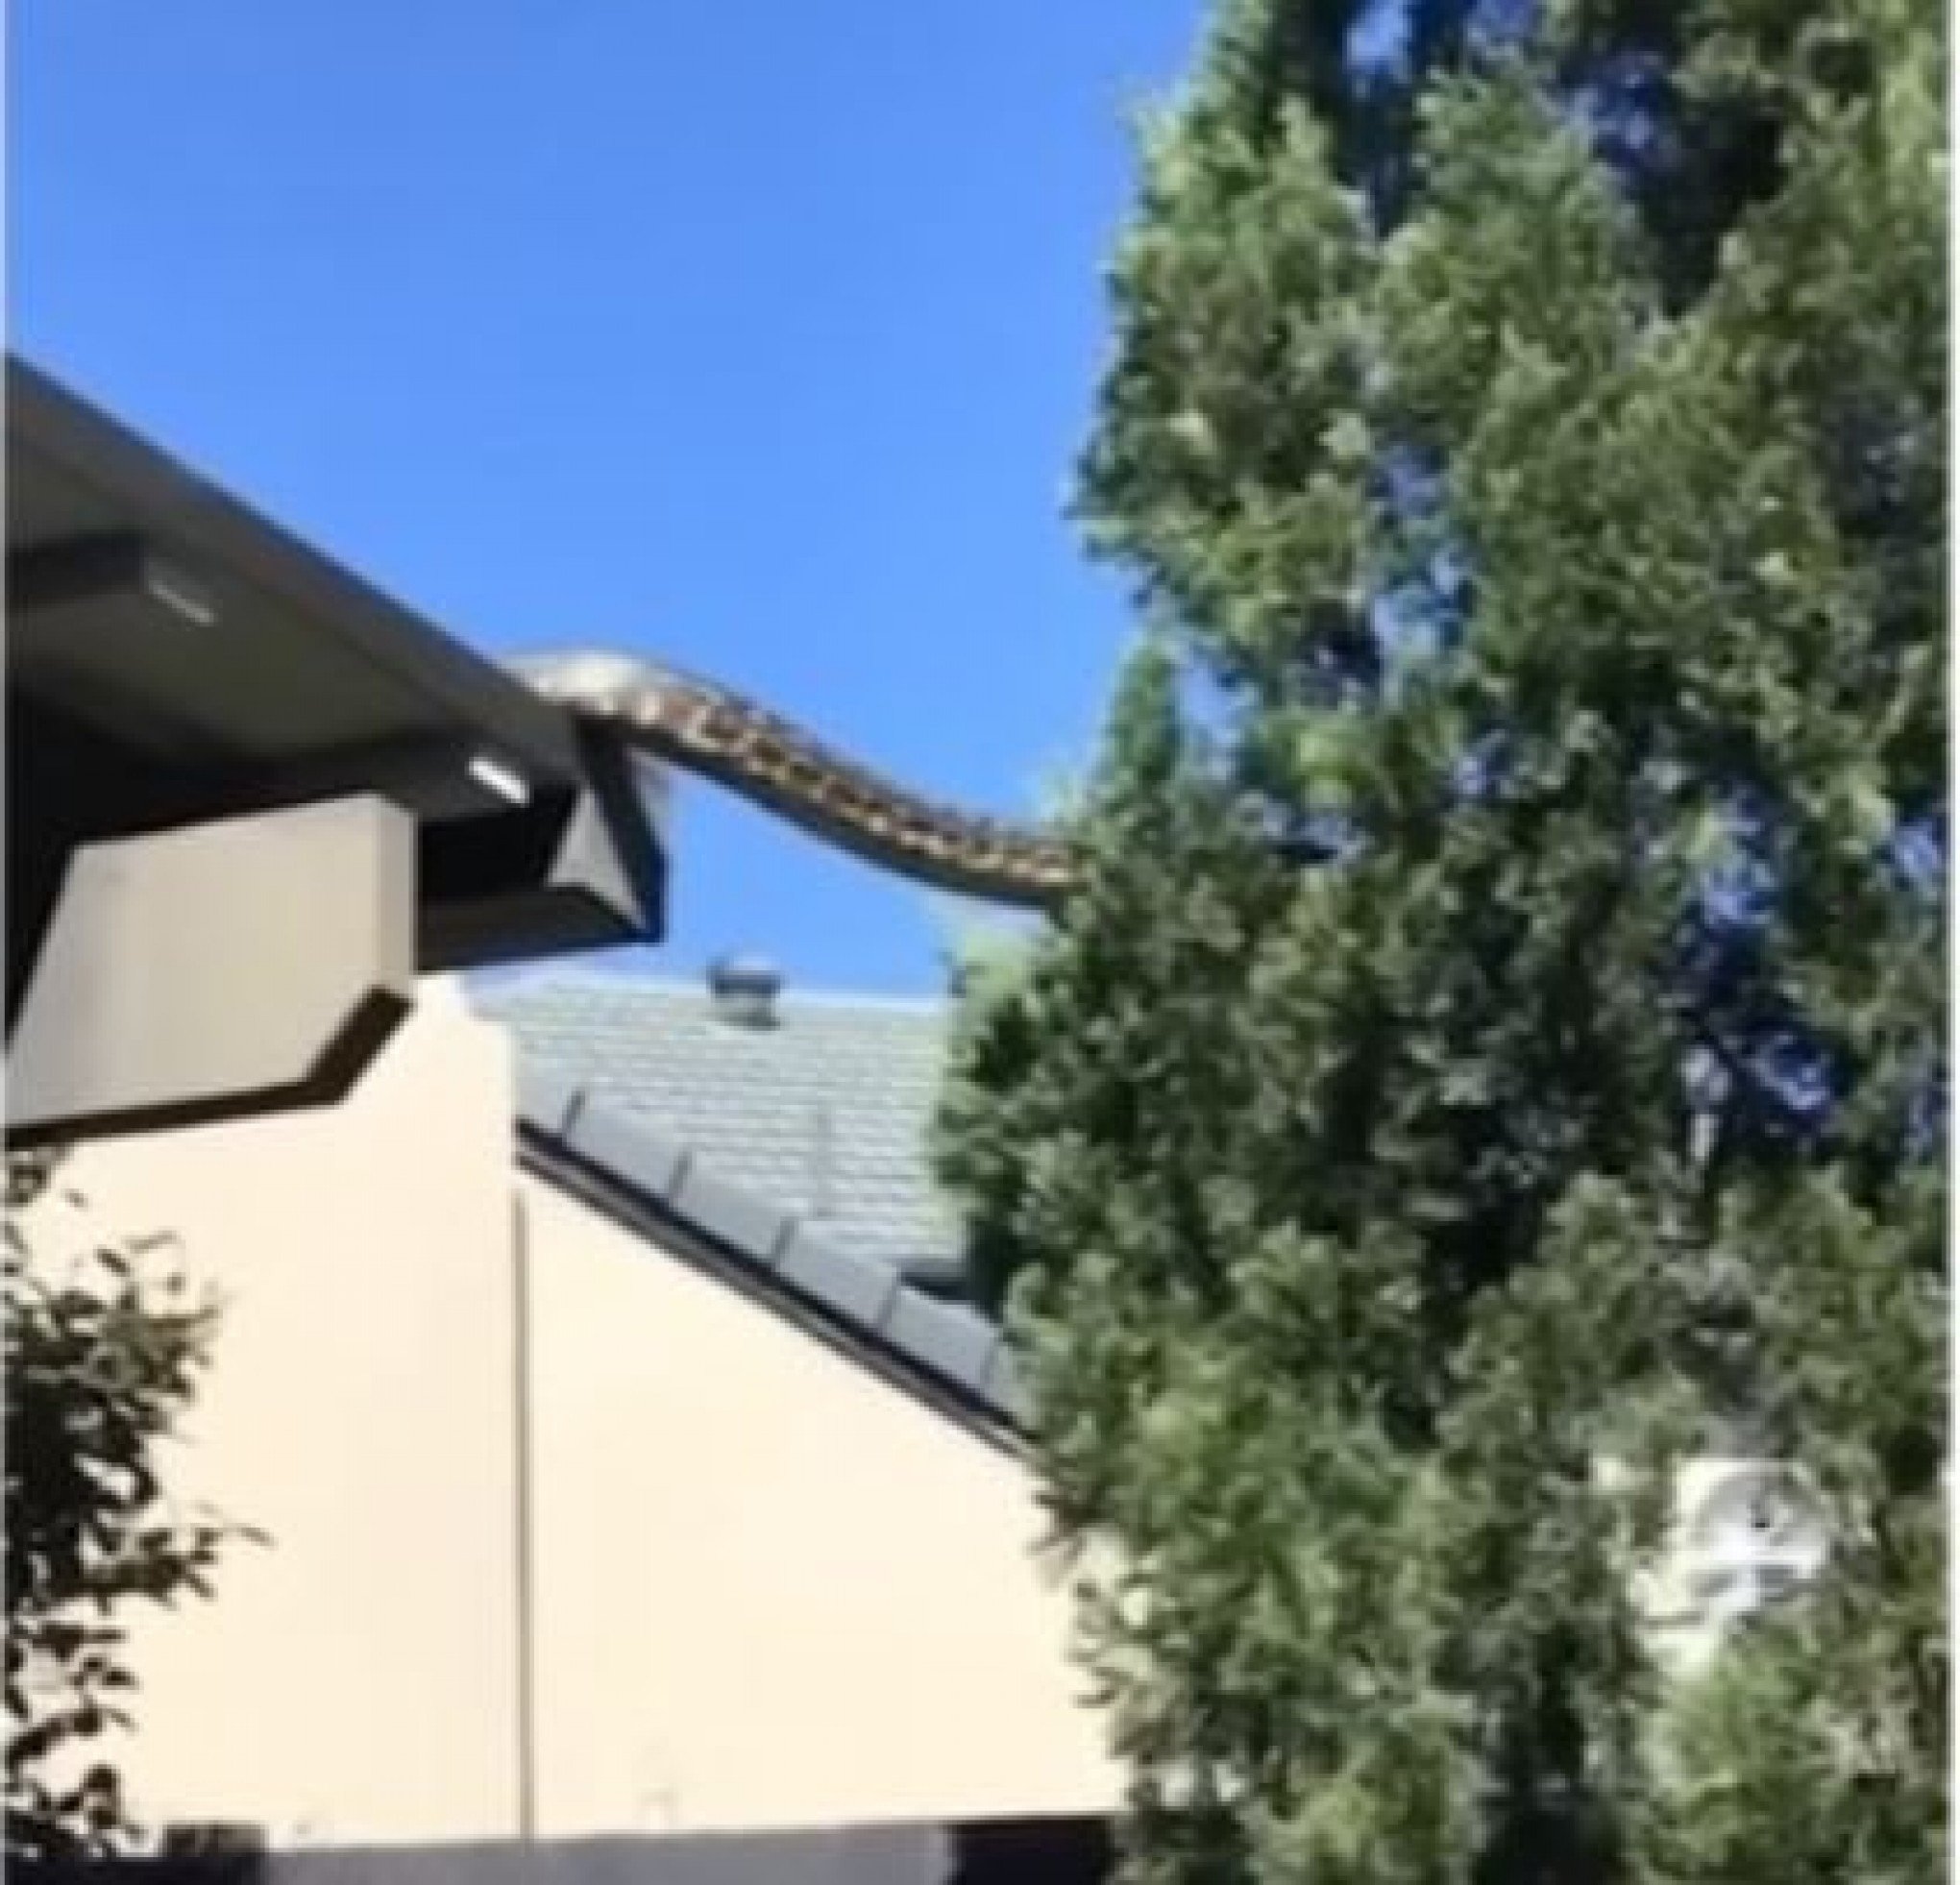 Fato ou Fake? Vídeo mostra cobra gigante saindo de telhado e escalando árvore na Austrália; veja